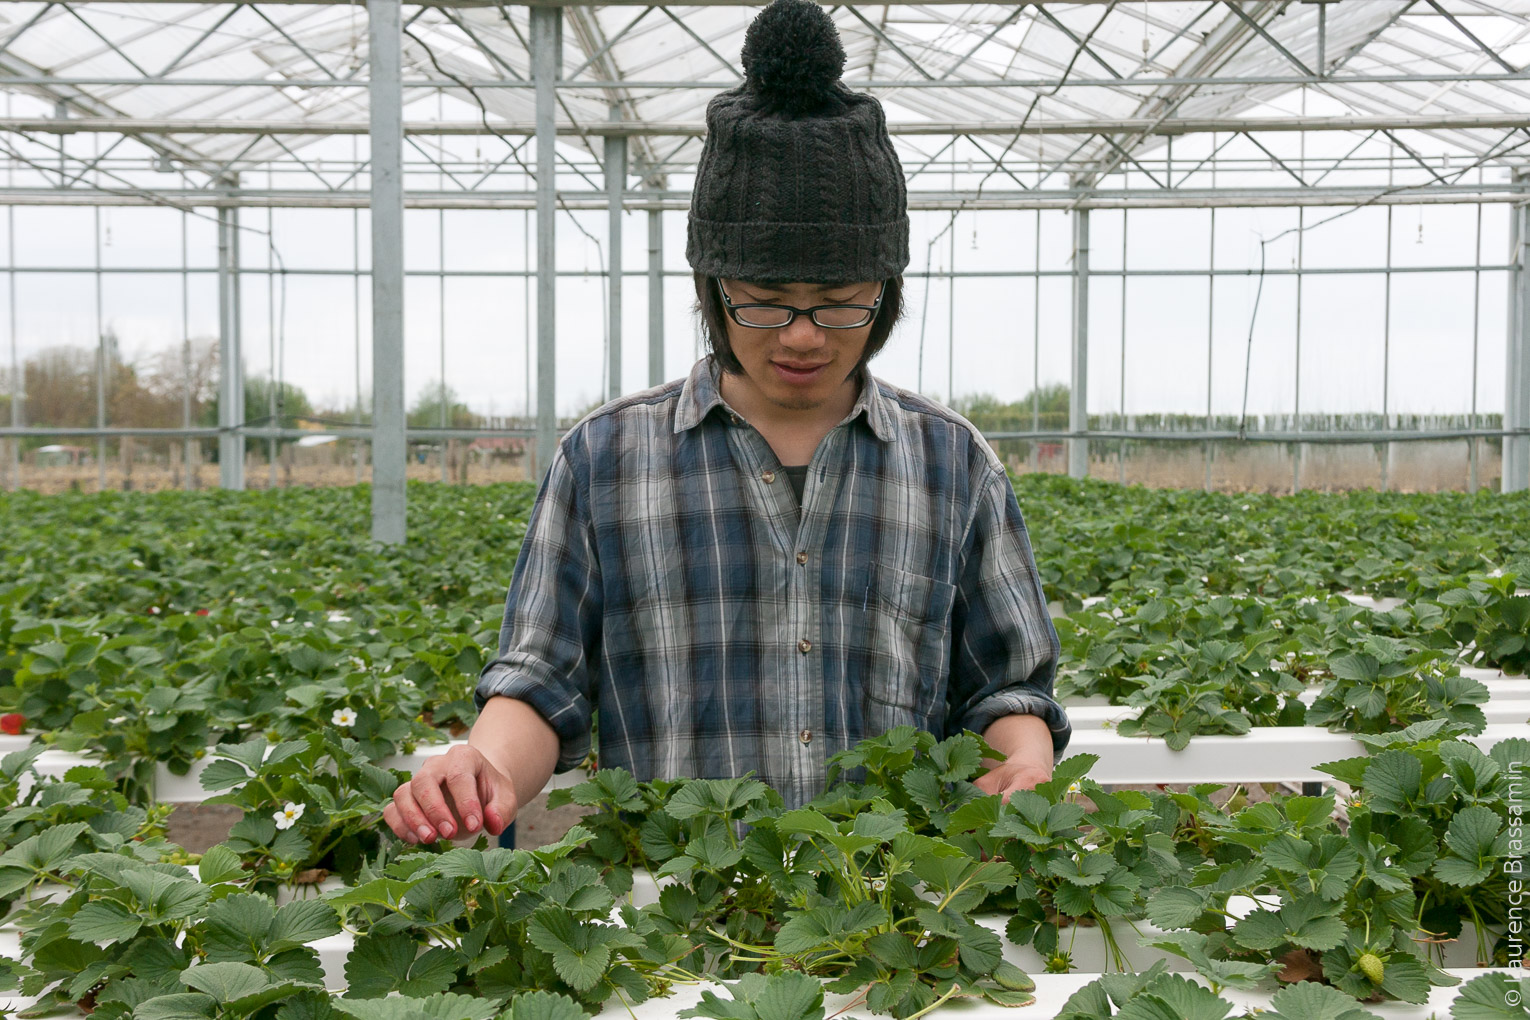 Liu travaille en tant que saisonnier agricole pour un petit producteur de fraises en hydroponie à Blenheim. Il a préalablement travaillé 5 mois dans une usine d'emballage de pommes à Hasting. Le travail à l'usine lui garantissait 40hrs par semaine. La ceuillette des fraises est un travail plus précaire. Il travaille entre 22hrs et 35hrs par semaines. Pour Liu, originaire de Chine, ce visa temporaire lui a donné une opportunité unique d'expérience de travail à l'étranger. La Chine n'a signé qu'un seul accord bilatéral de ce type, avec la Nouvelle-Zélande. Il profite aussi de la différence de valeur monétaire entre le dollar néo-zélandais et le yuan.